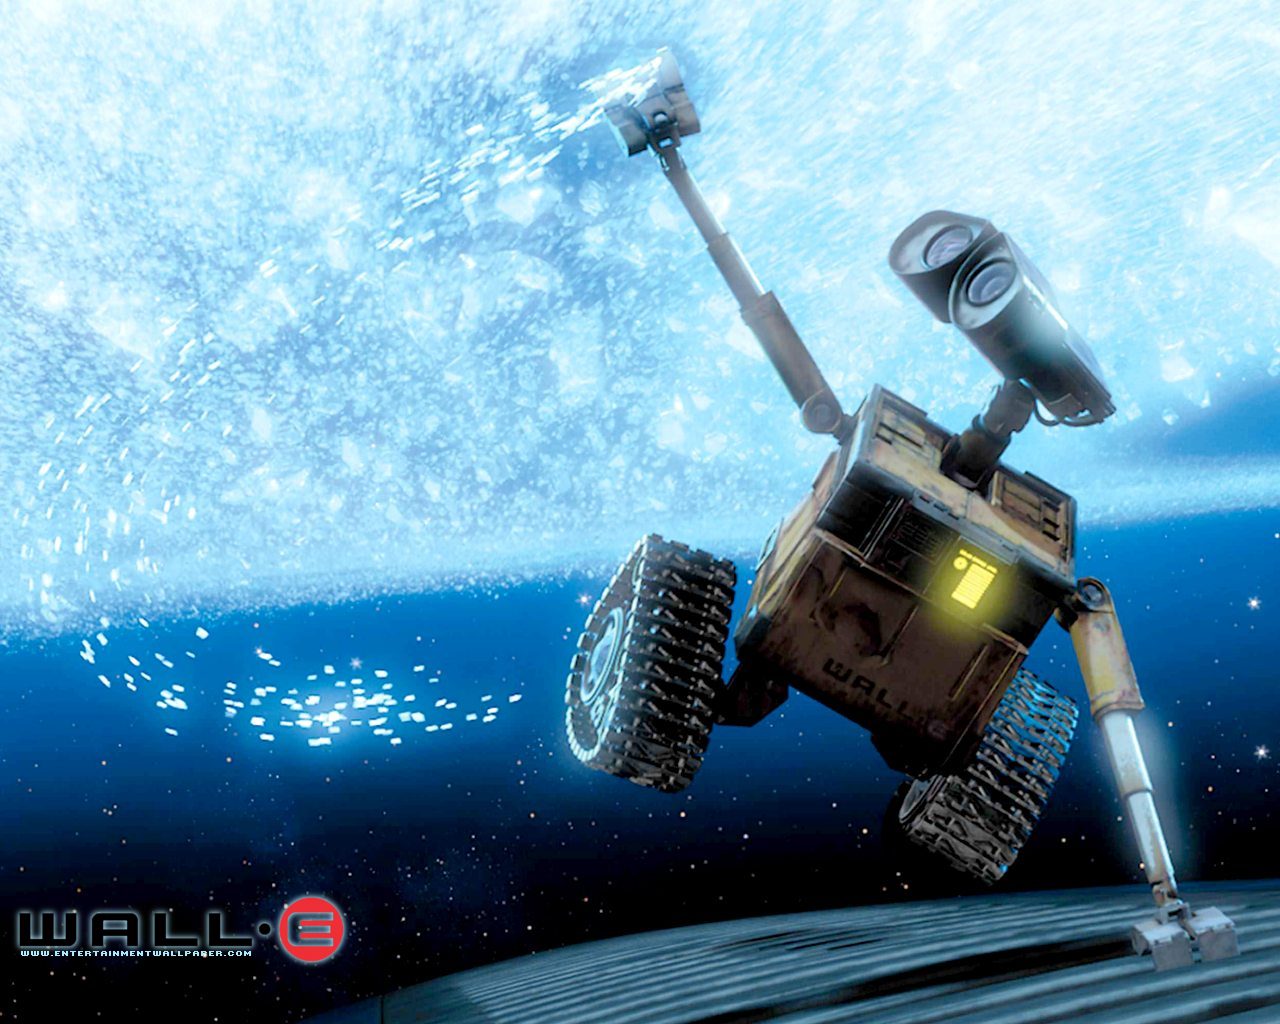 壁纸1280x1024 星际总动员 WALL E 电影壁纸壁纸 动画电影《机器人总动员WALL·E 》全套壁纸壁纸 动画电影《机器人总动员WALL·E 》全套壁纸图片 动画电影《机器人总动员WALL·E 》全套壁纸素材 影视壁纸 影视图库 影视图片素材桌面壁纸